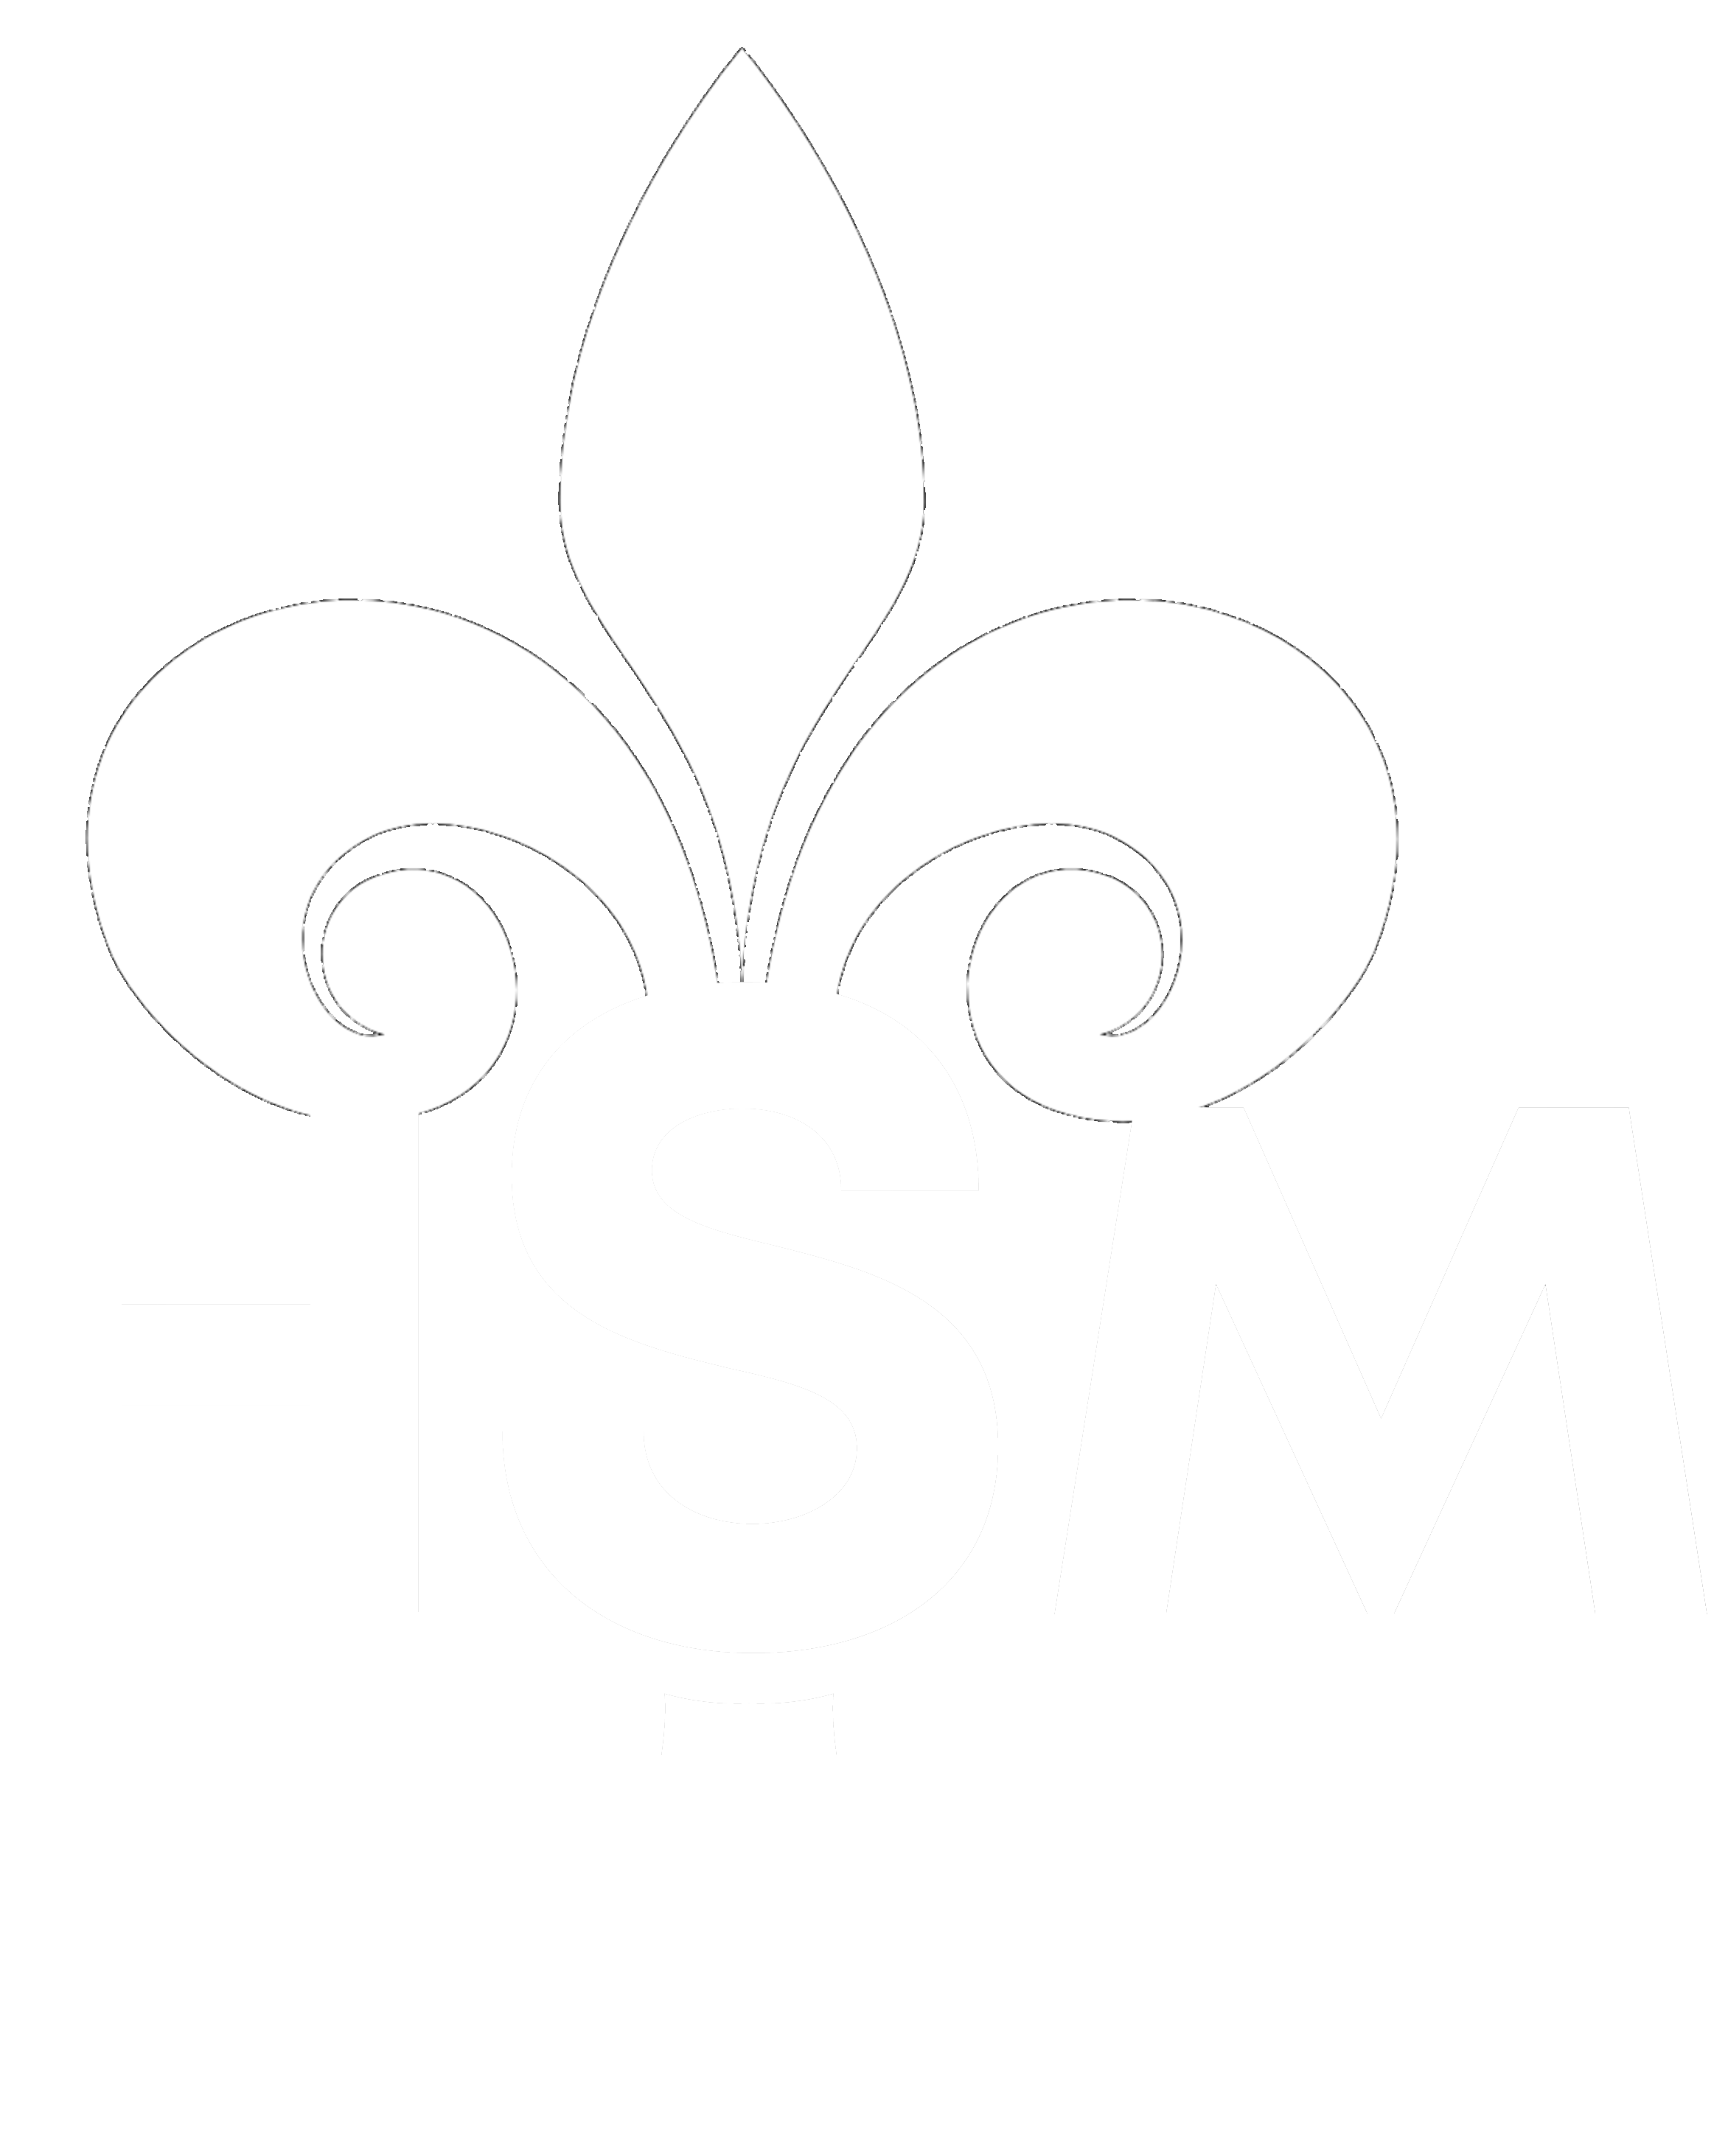 Comercializadora HSM